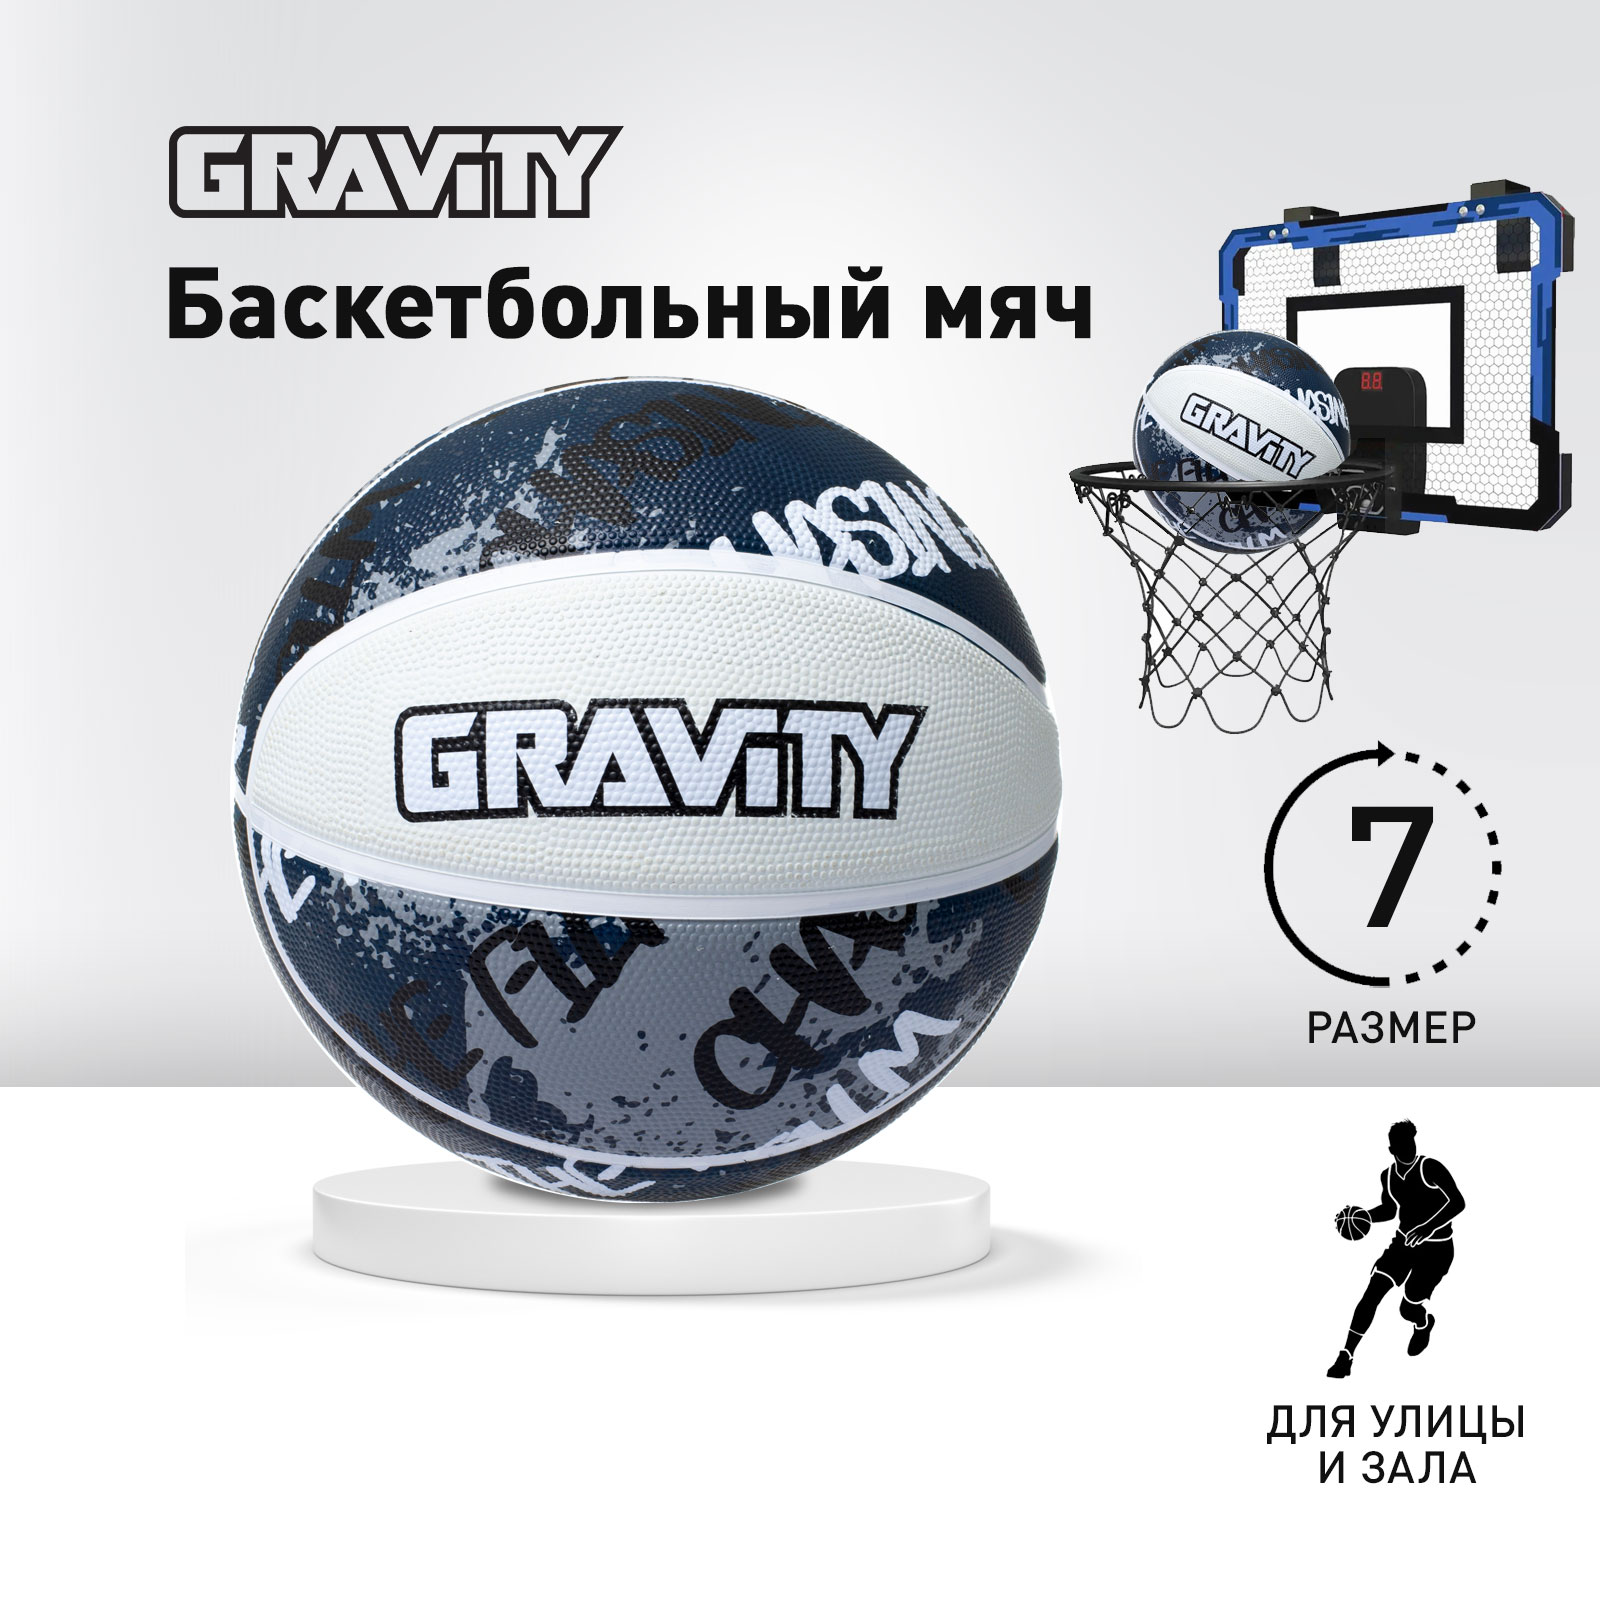 Баскетбольный мяч Gravity, резиновый, черно-белый, размер 7